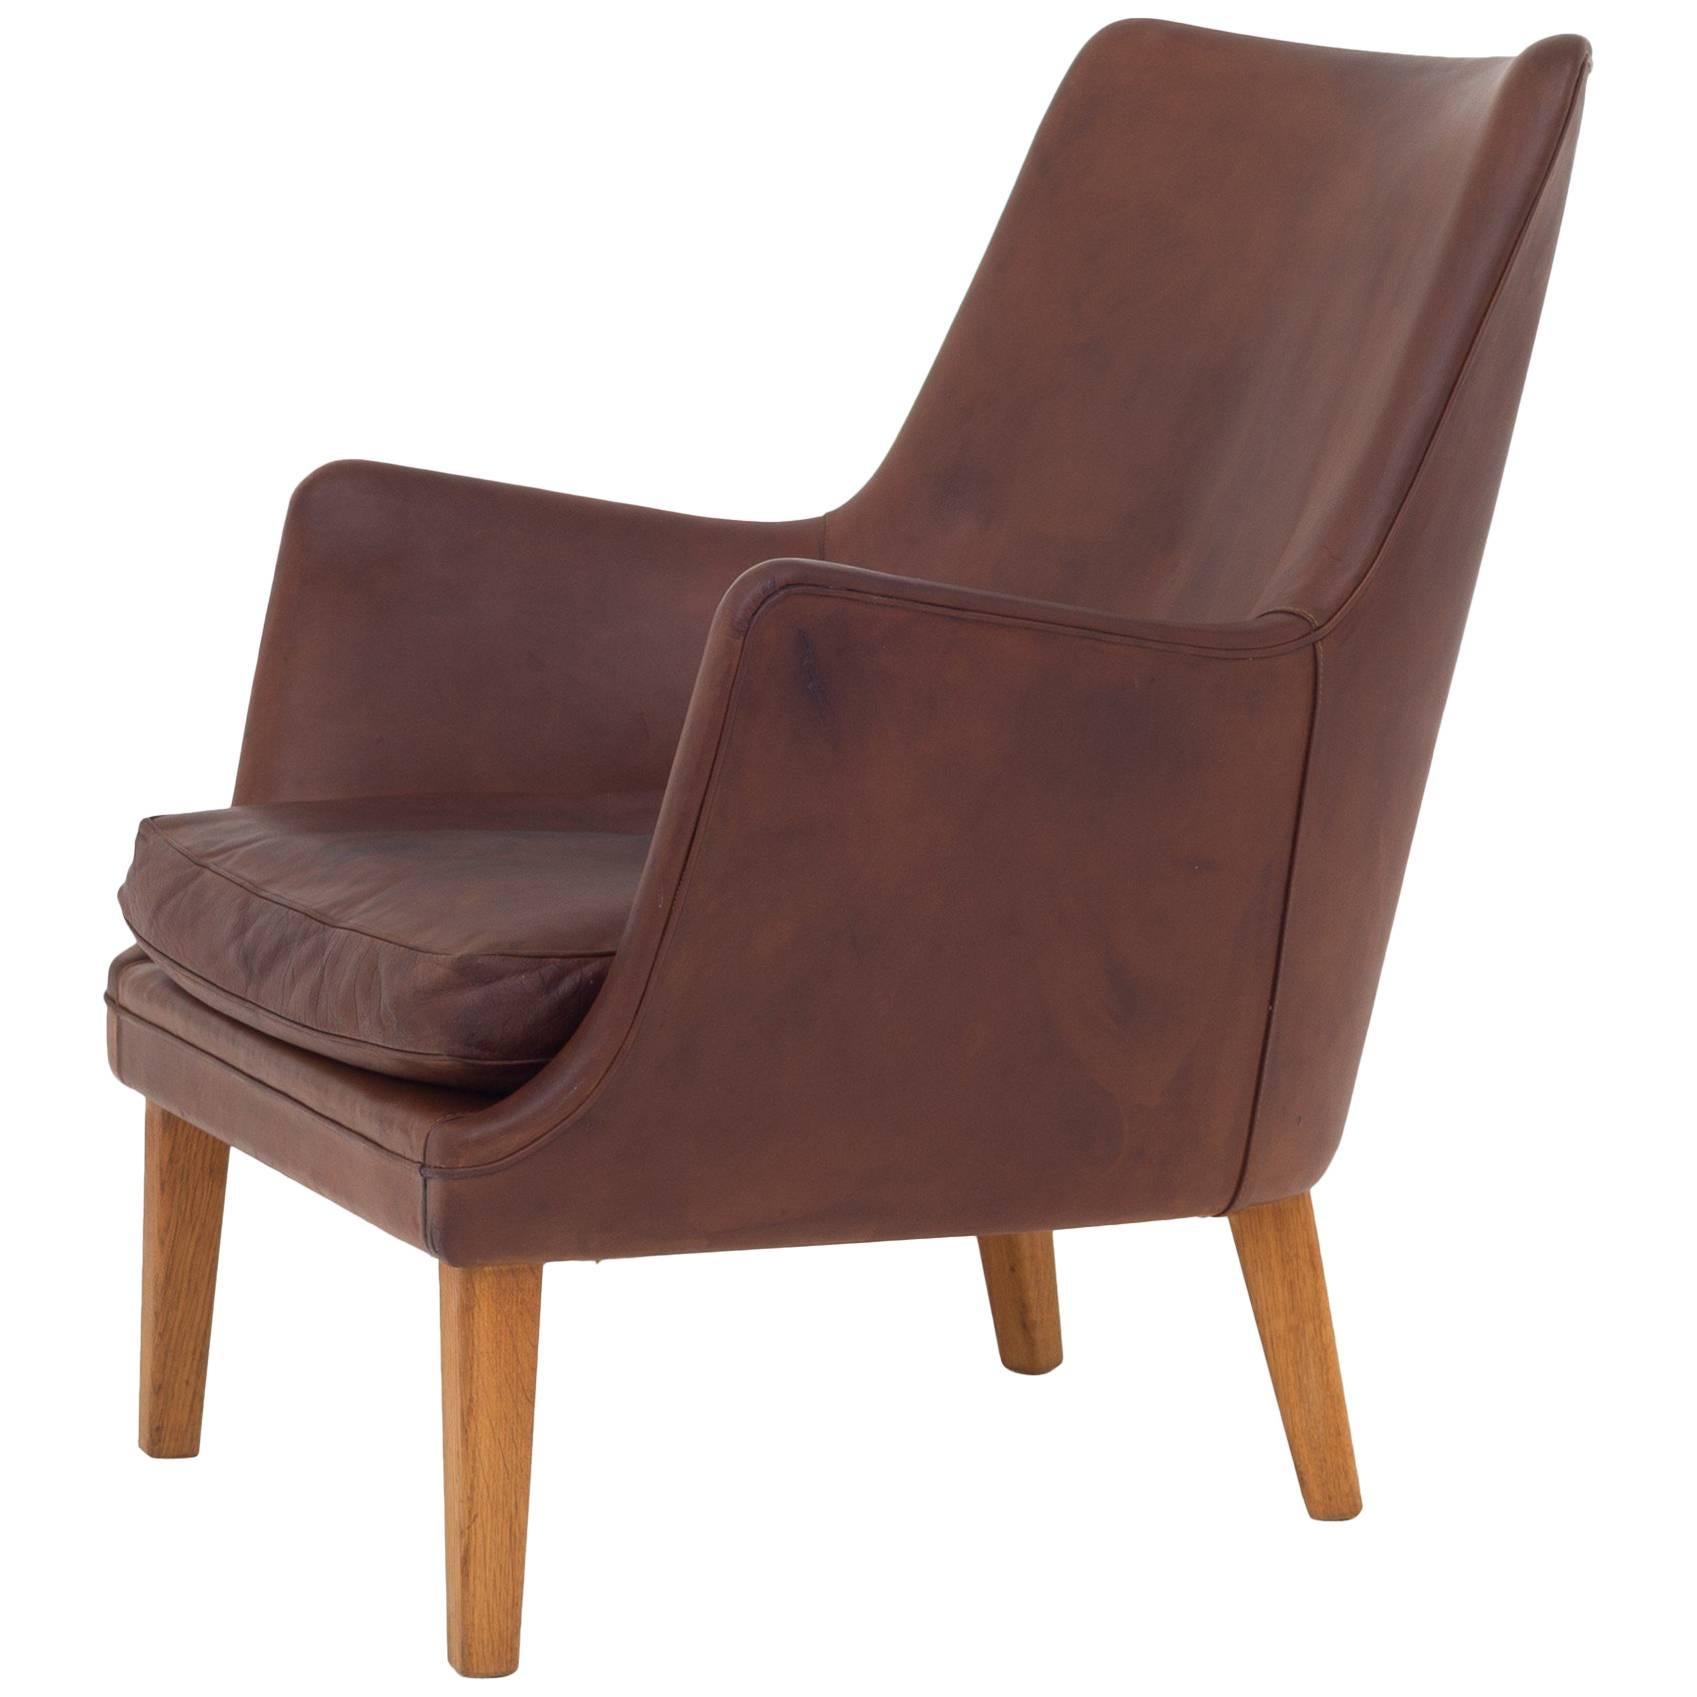 AV 53 Easy Chair in Leather by Arne Vodder